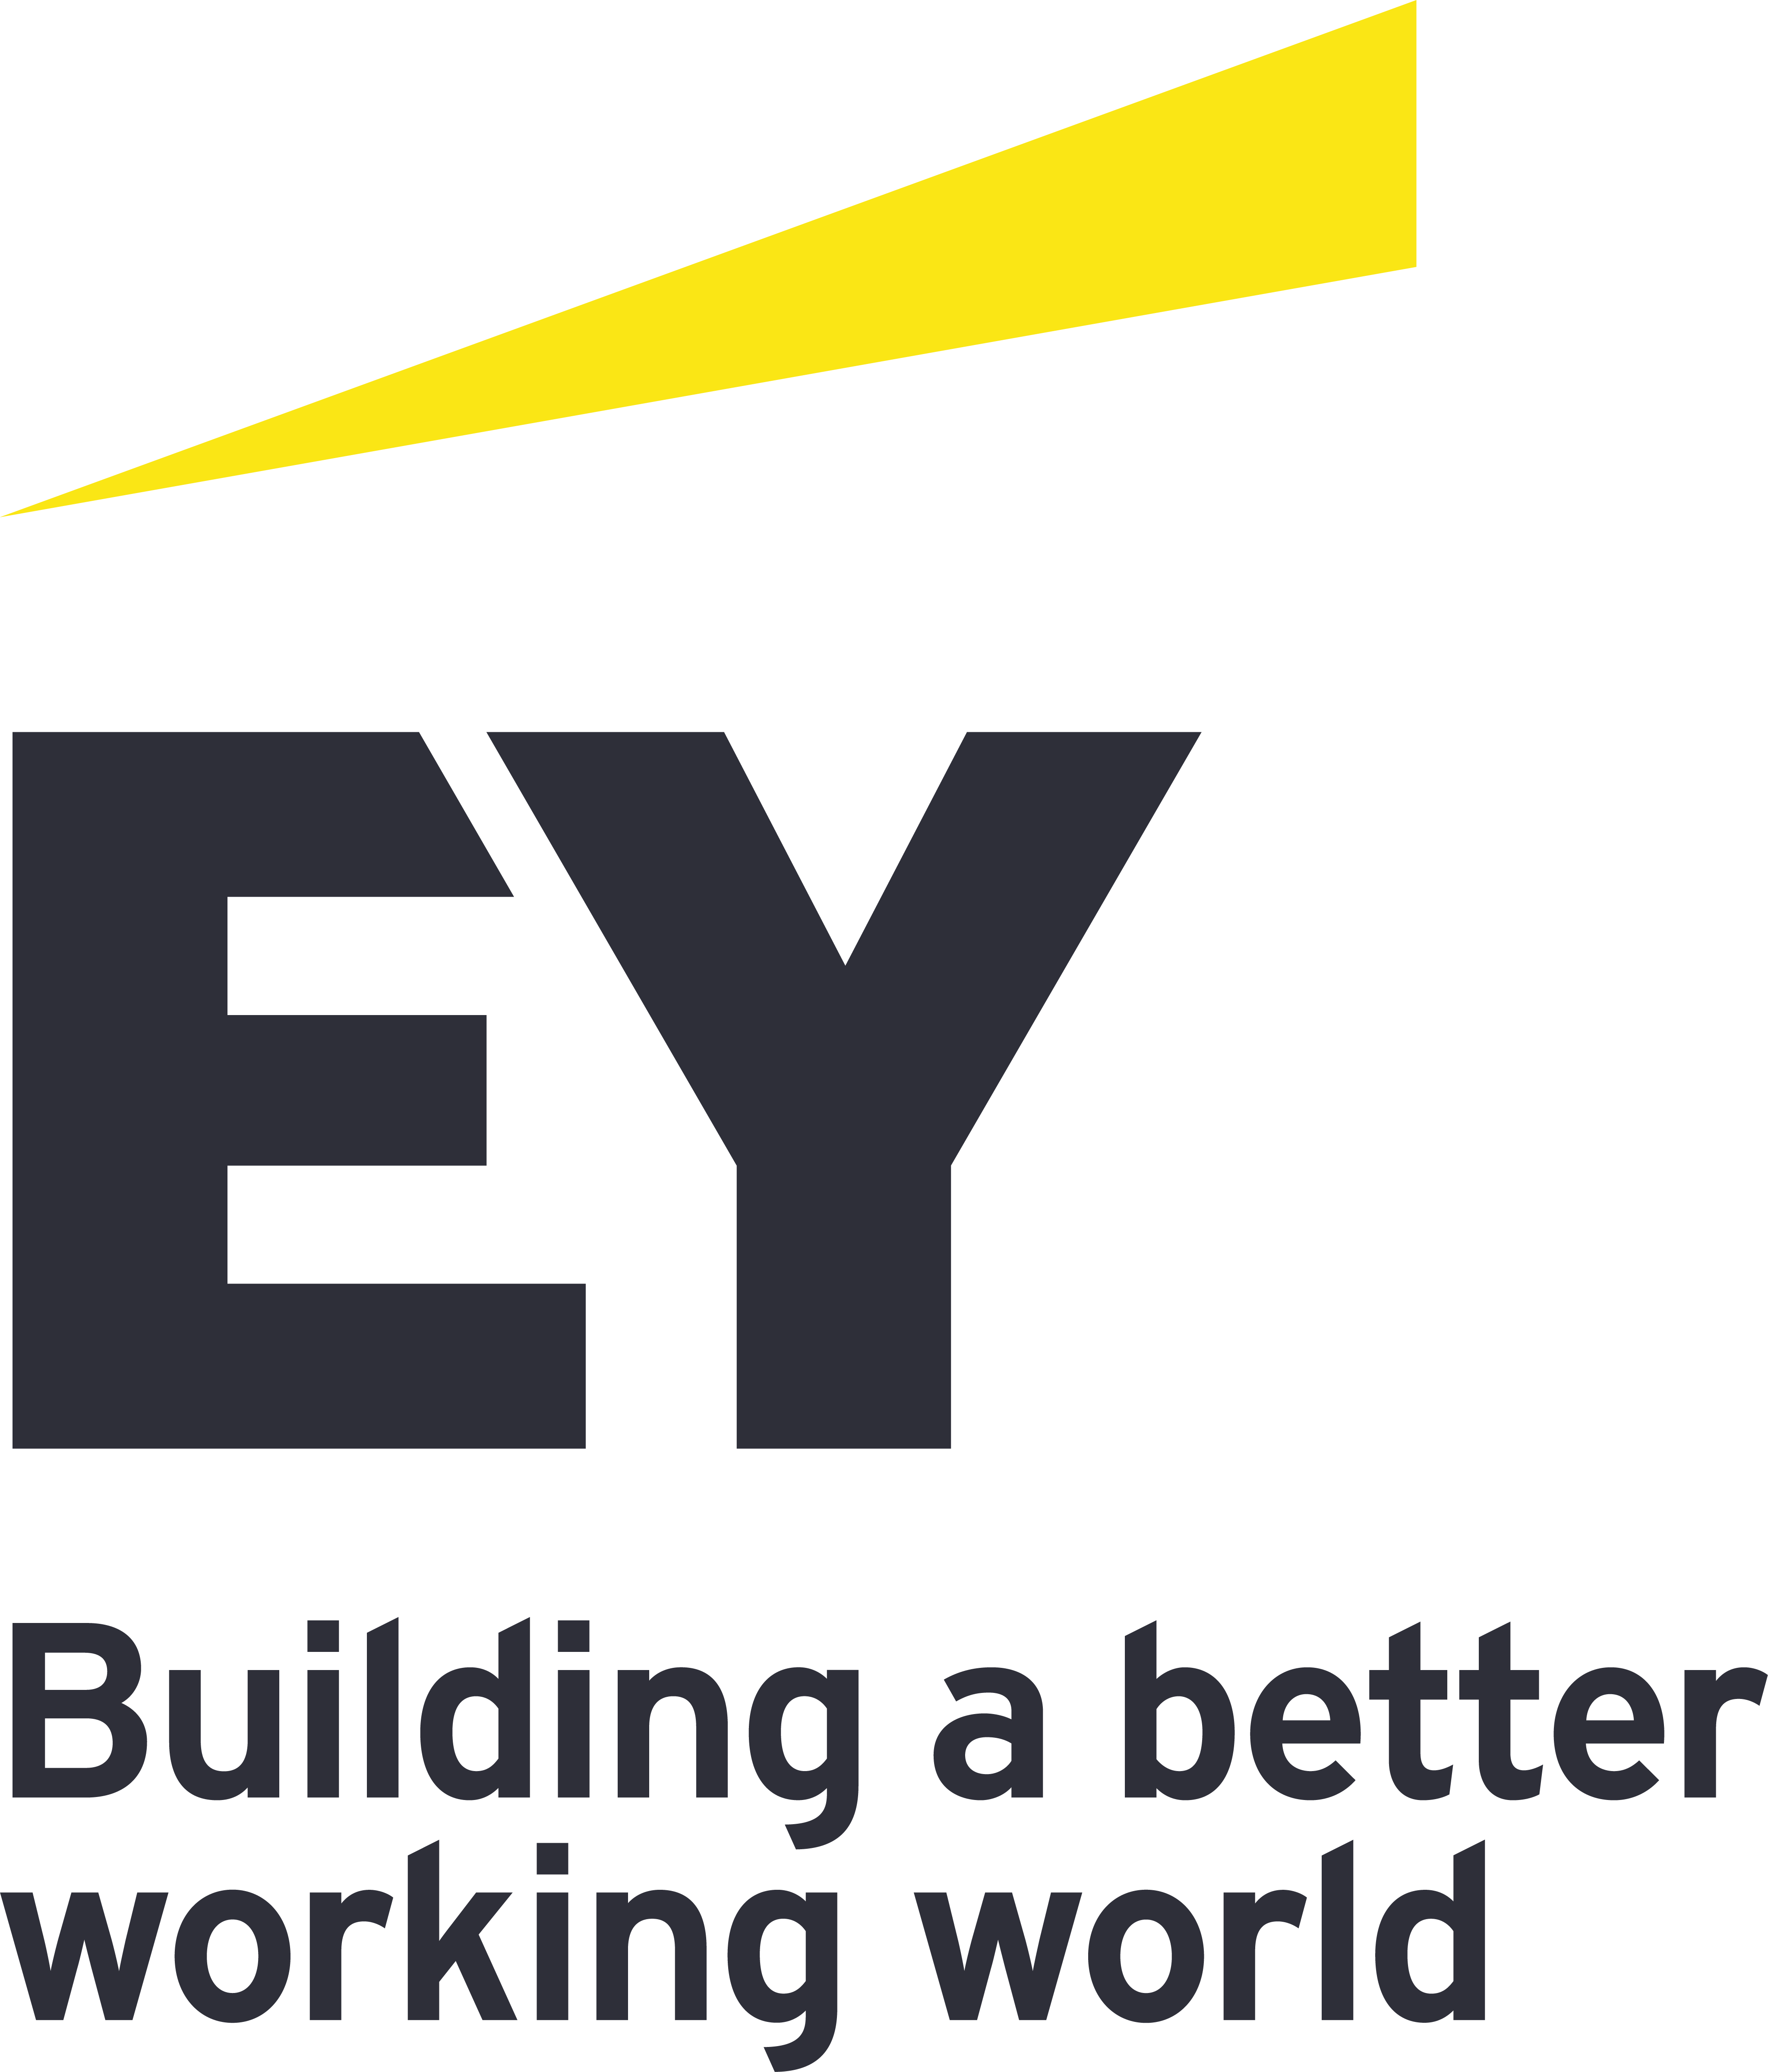 Logotipo da empresa EY. Trata-se da palavra “EY” escrita em preto. Abaixo disso, há uma frase “Building a better working world”. Acima do “EY”, há uma forma abstrata amarela.